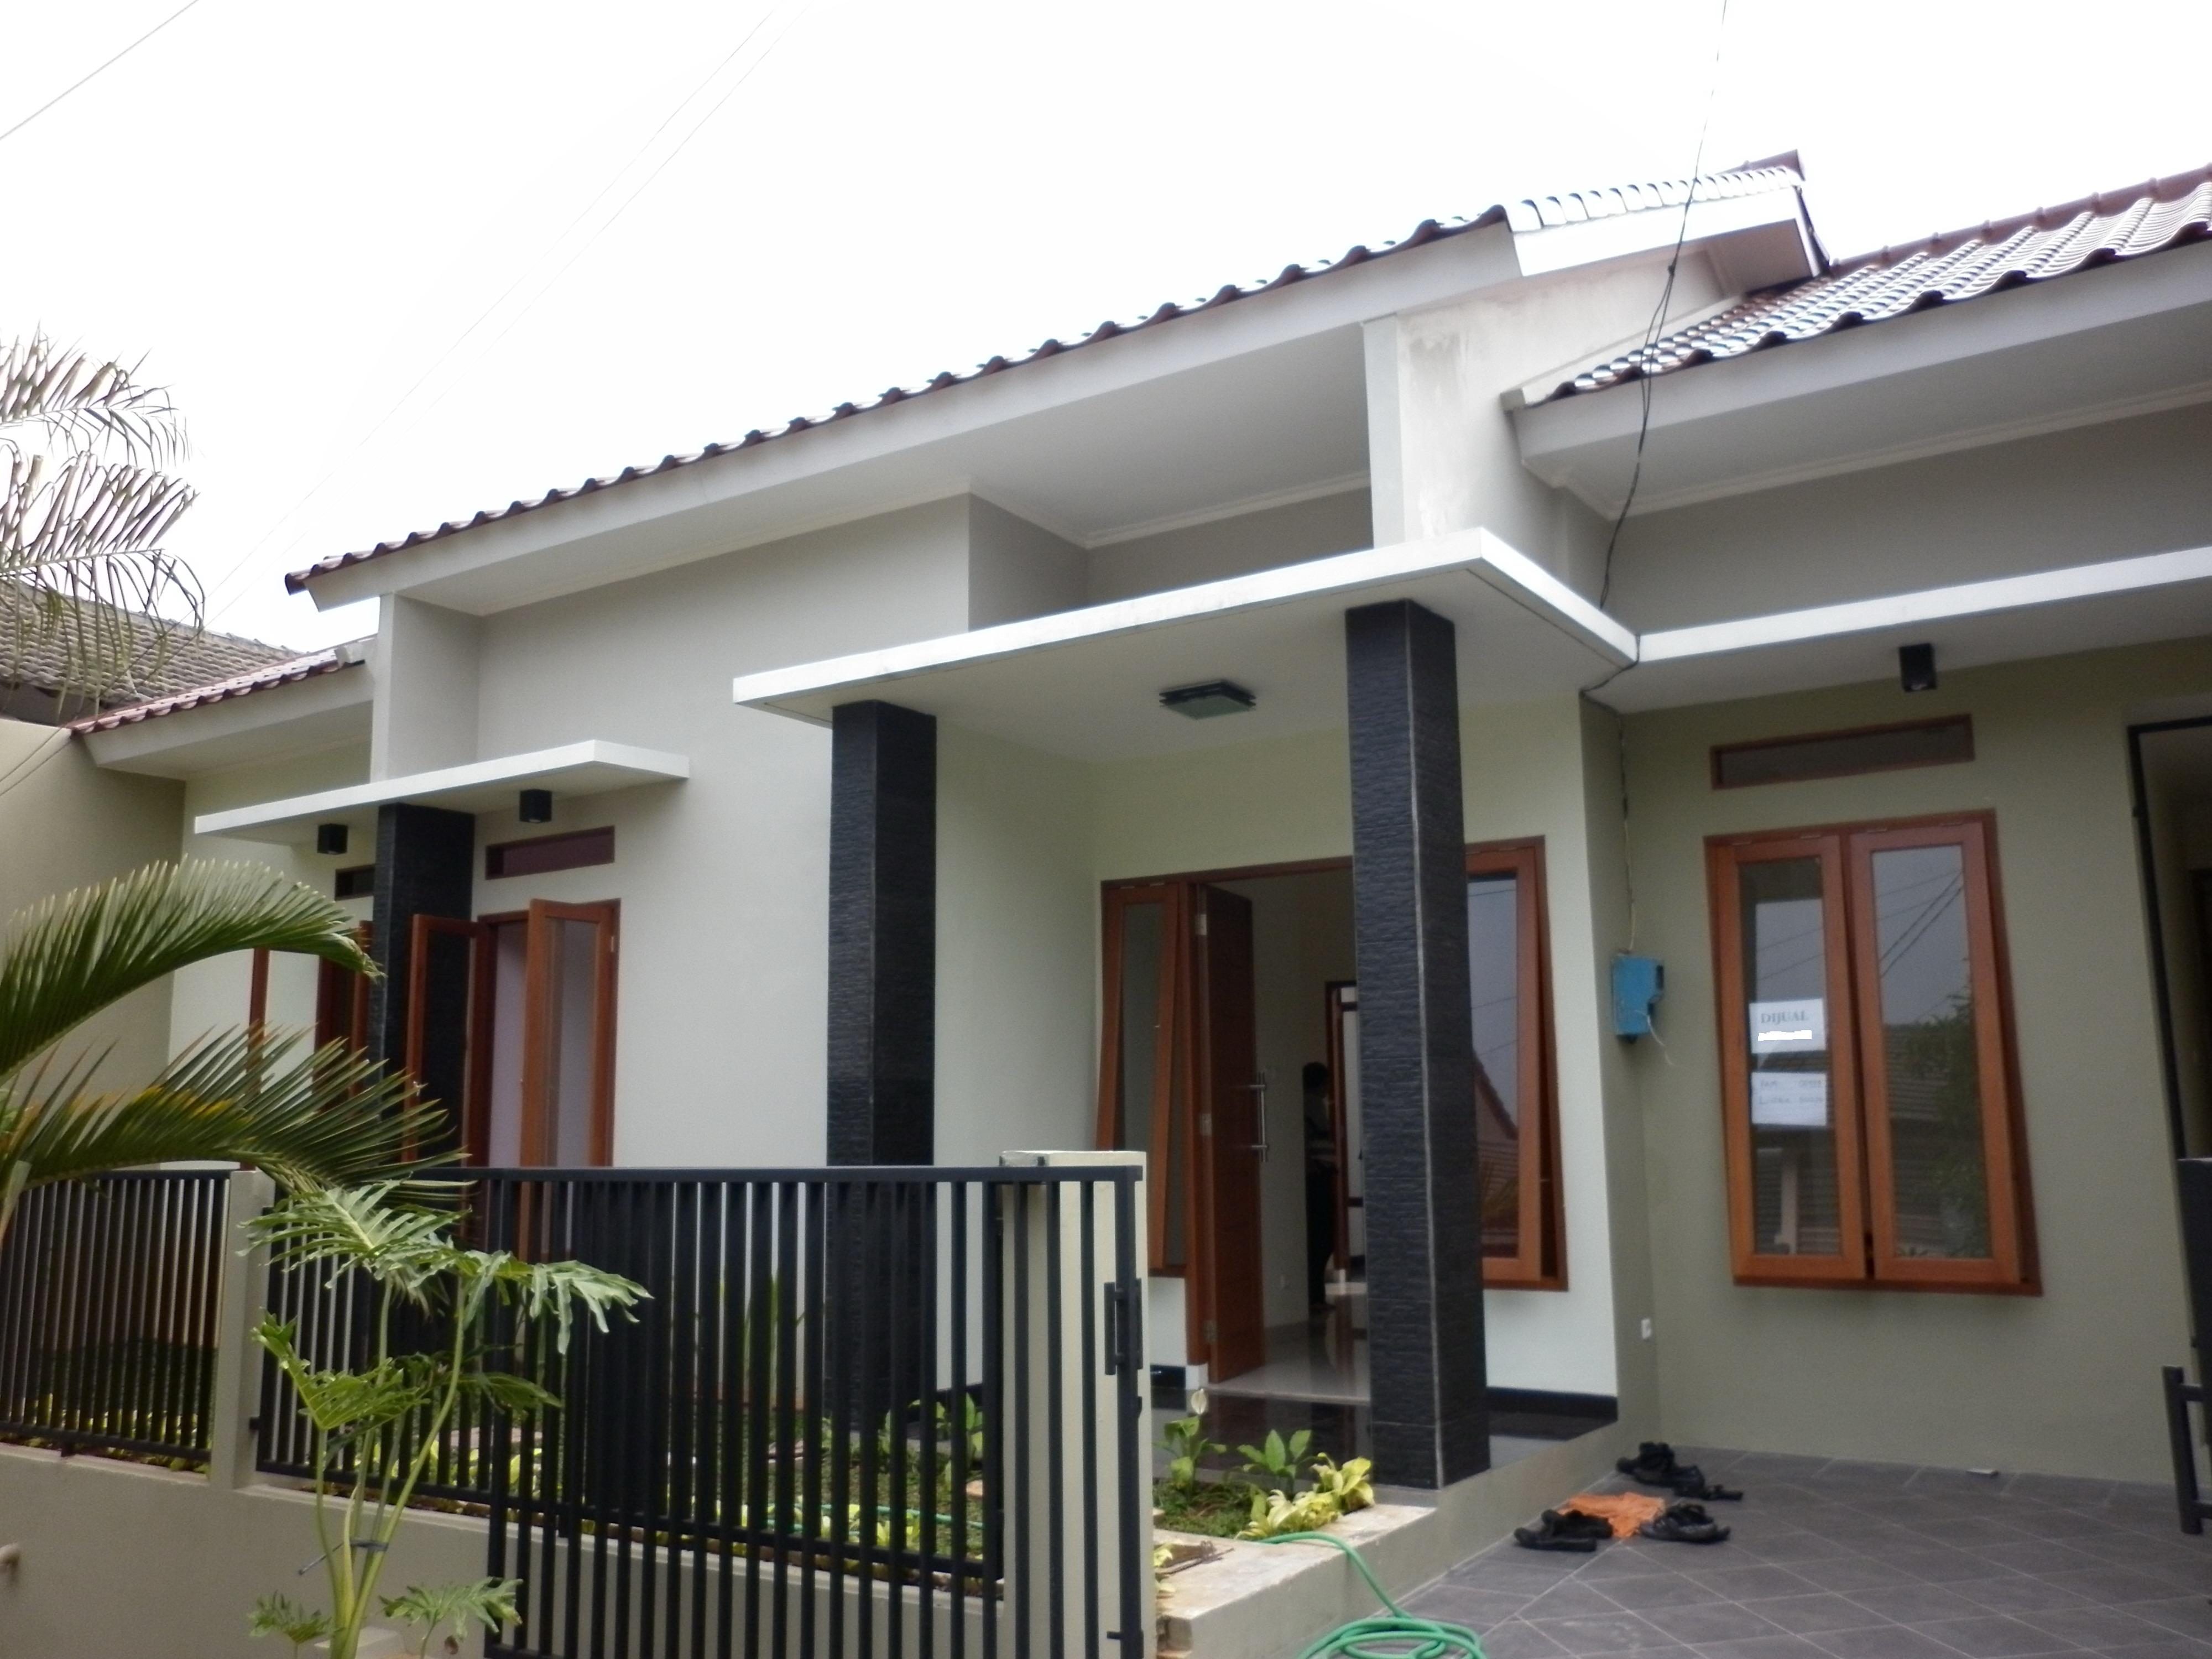  Rumah  untuk pasangan muda di Sektor  9  Bintaro  